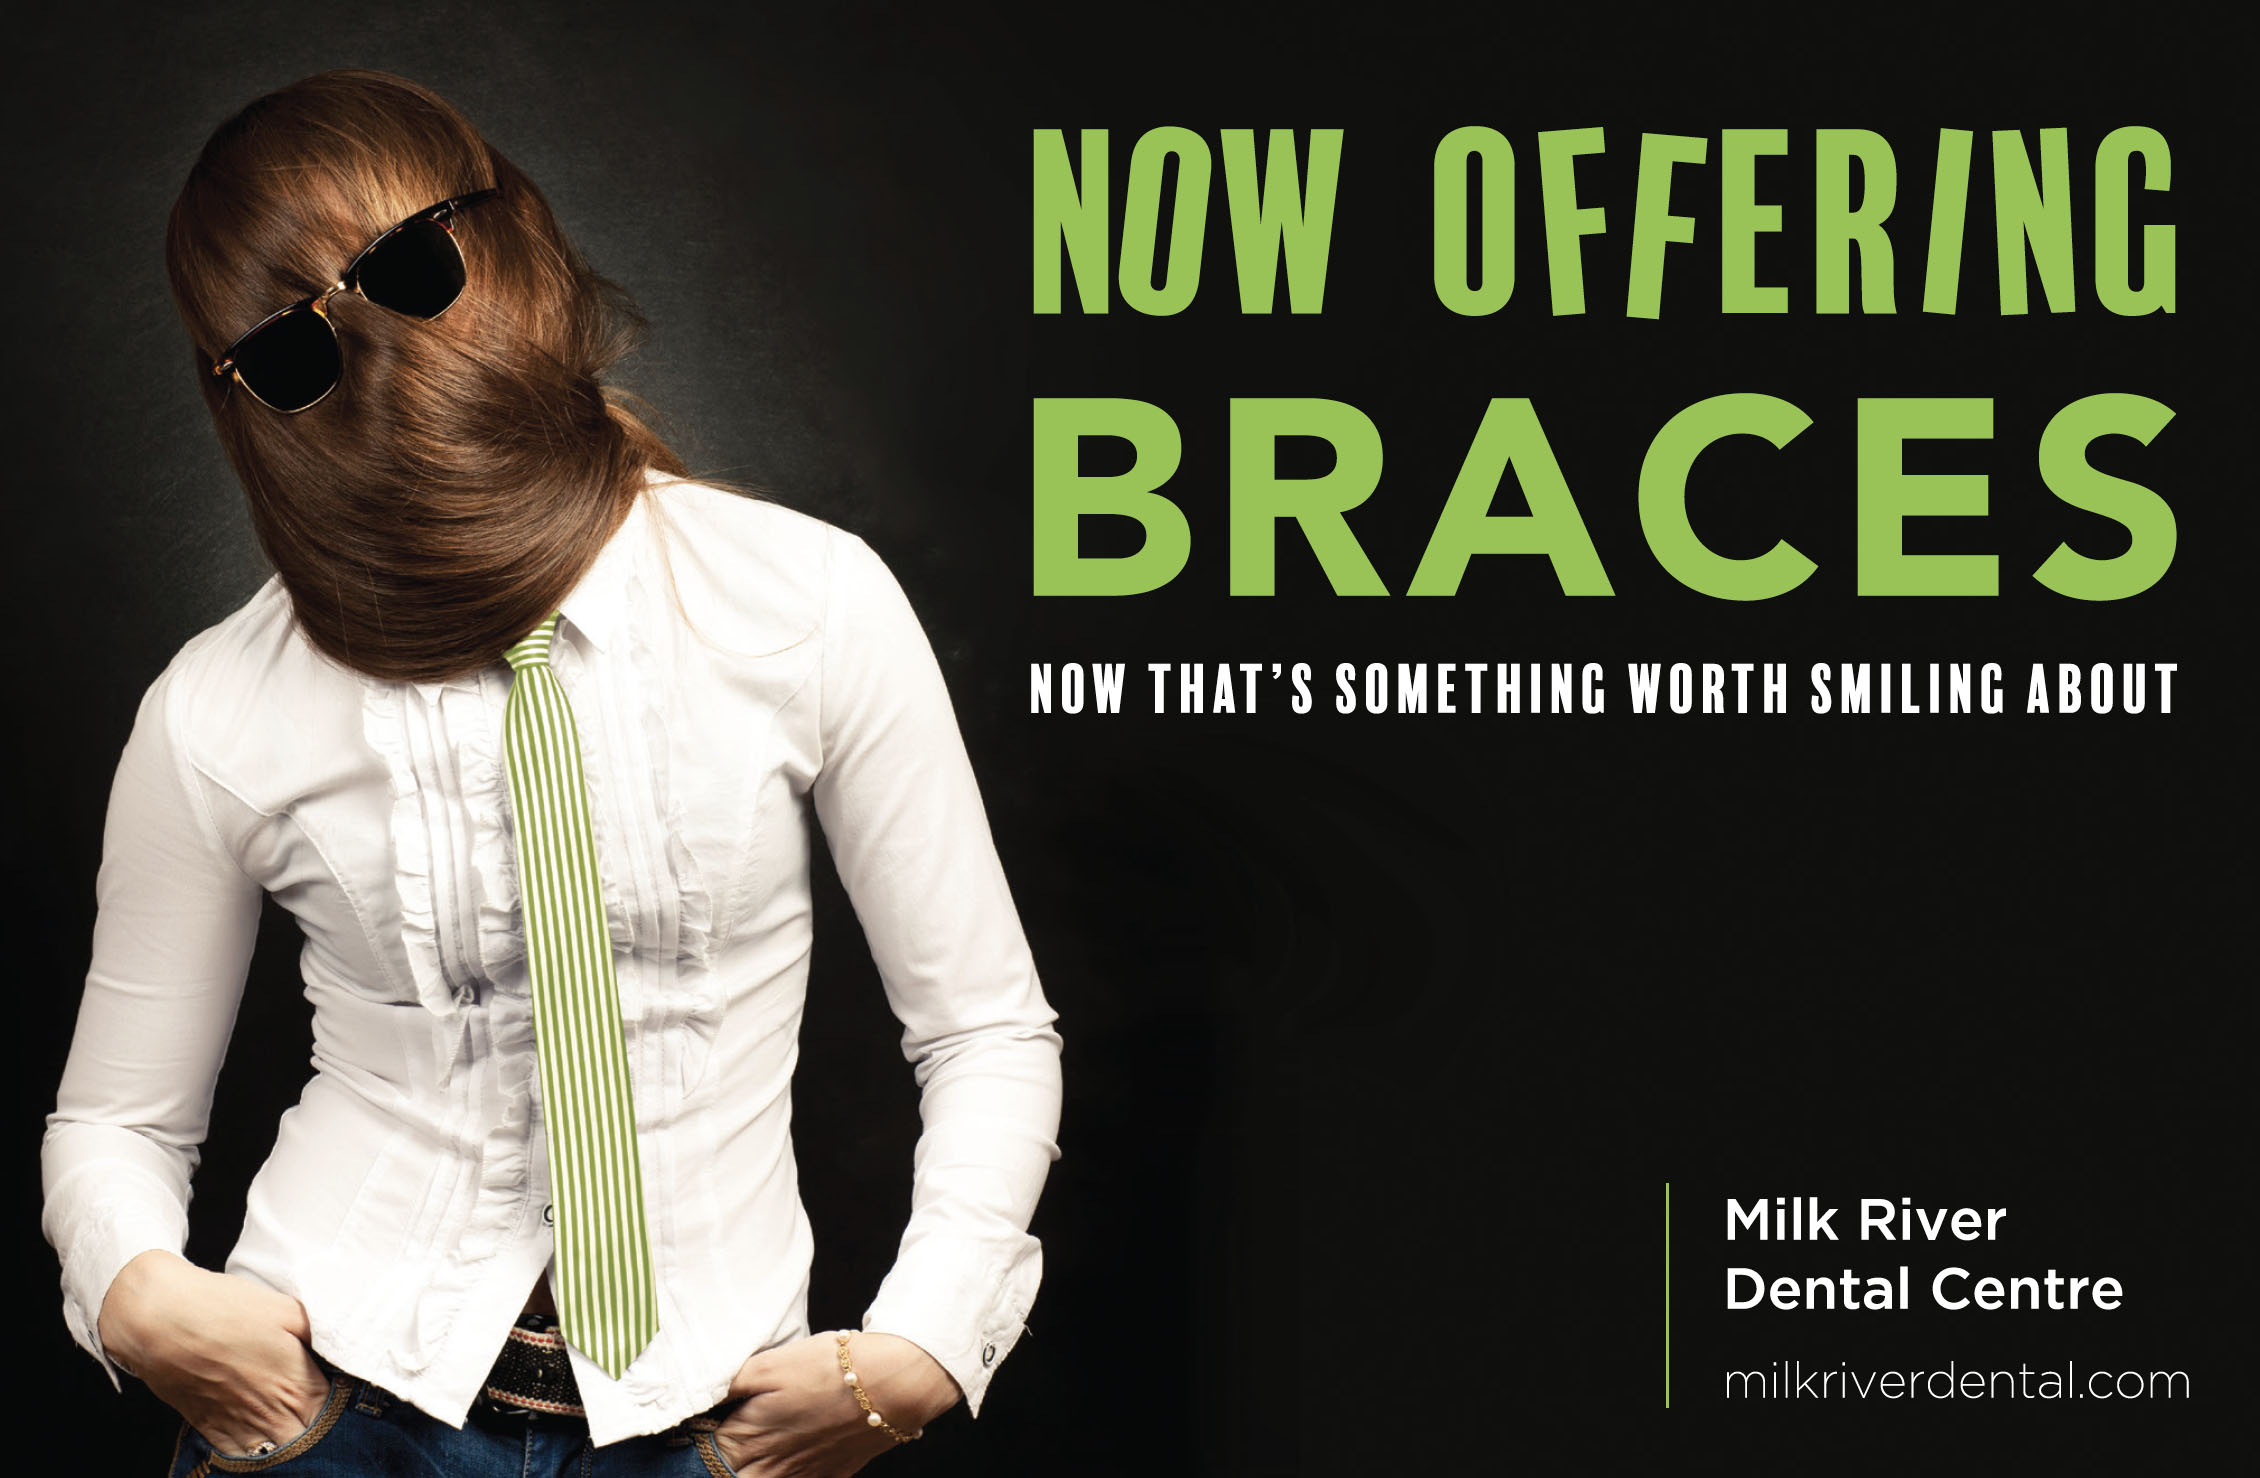 Advertising for Milk River Dental